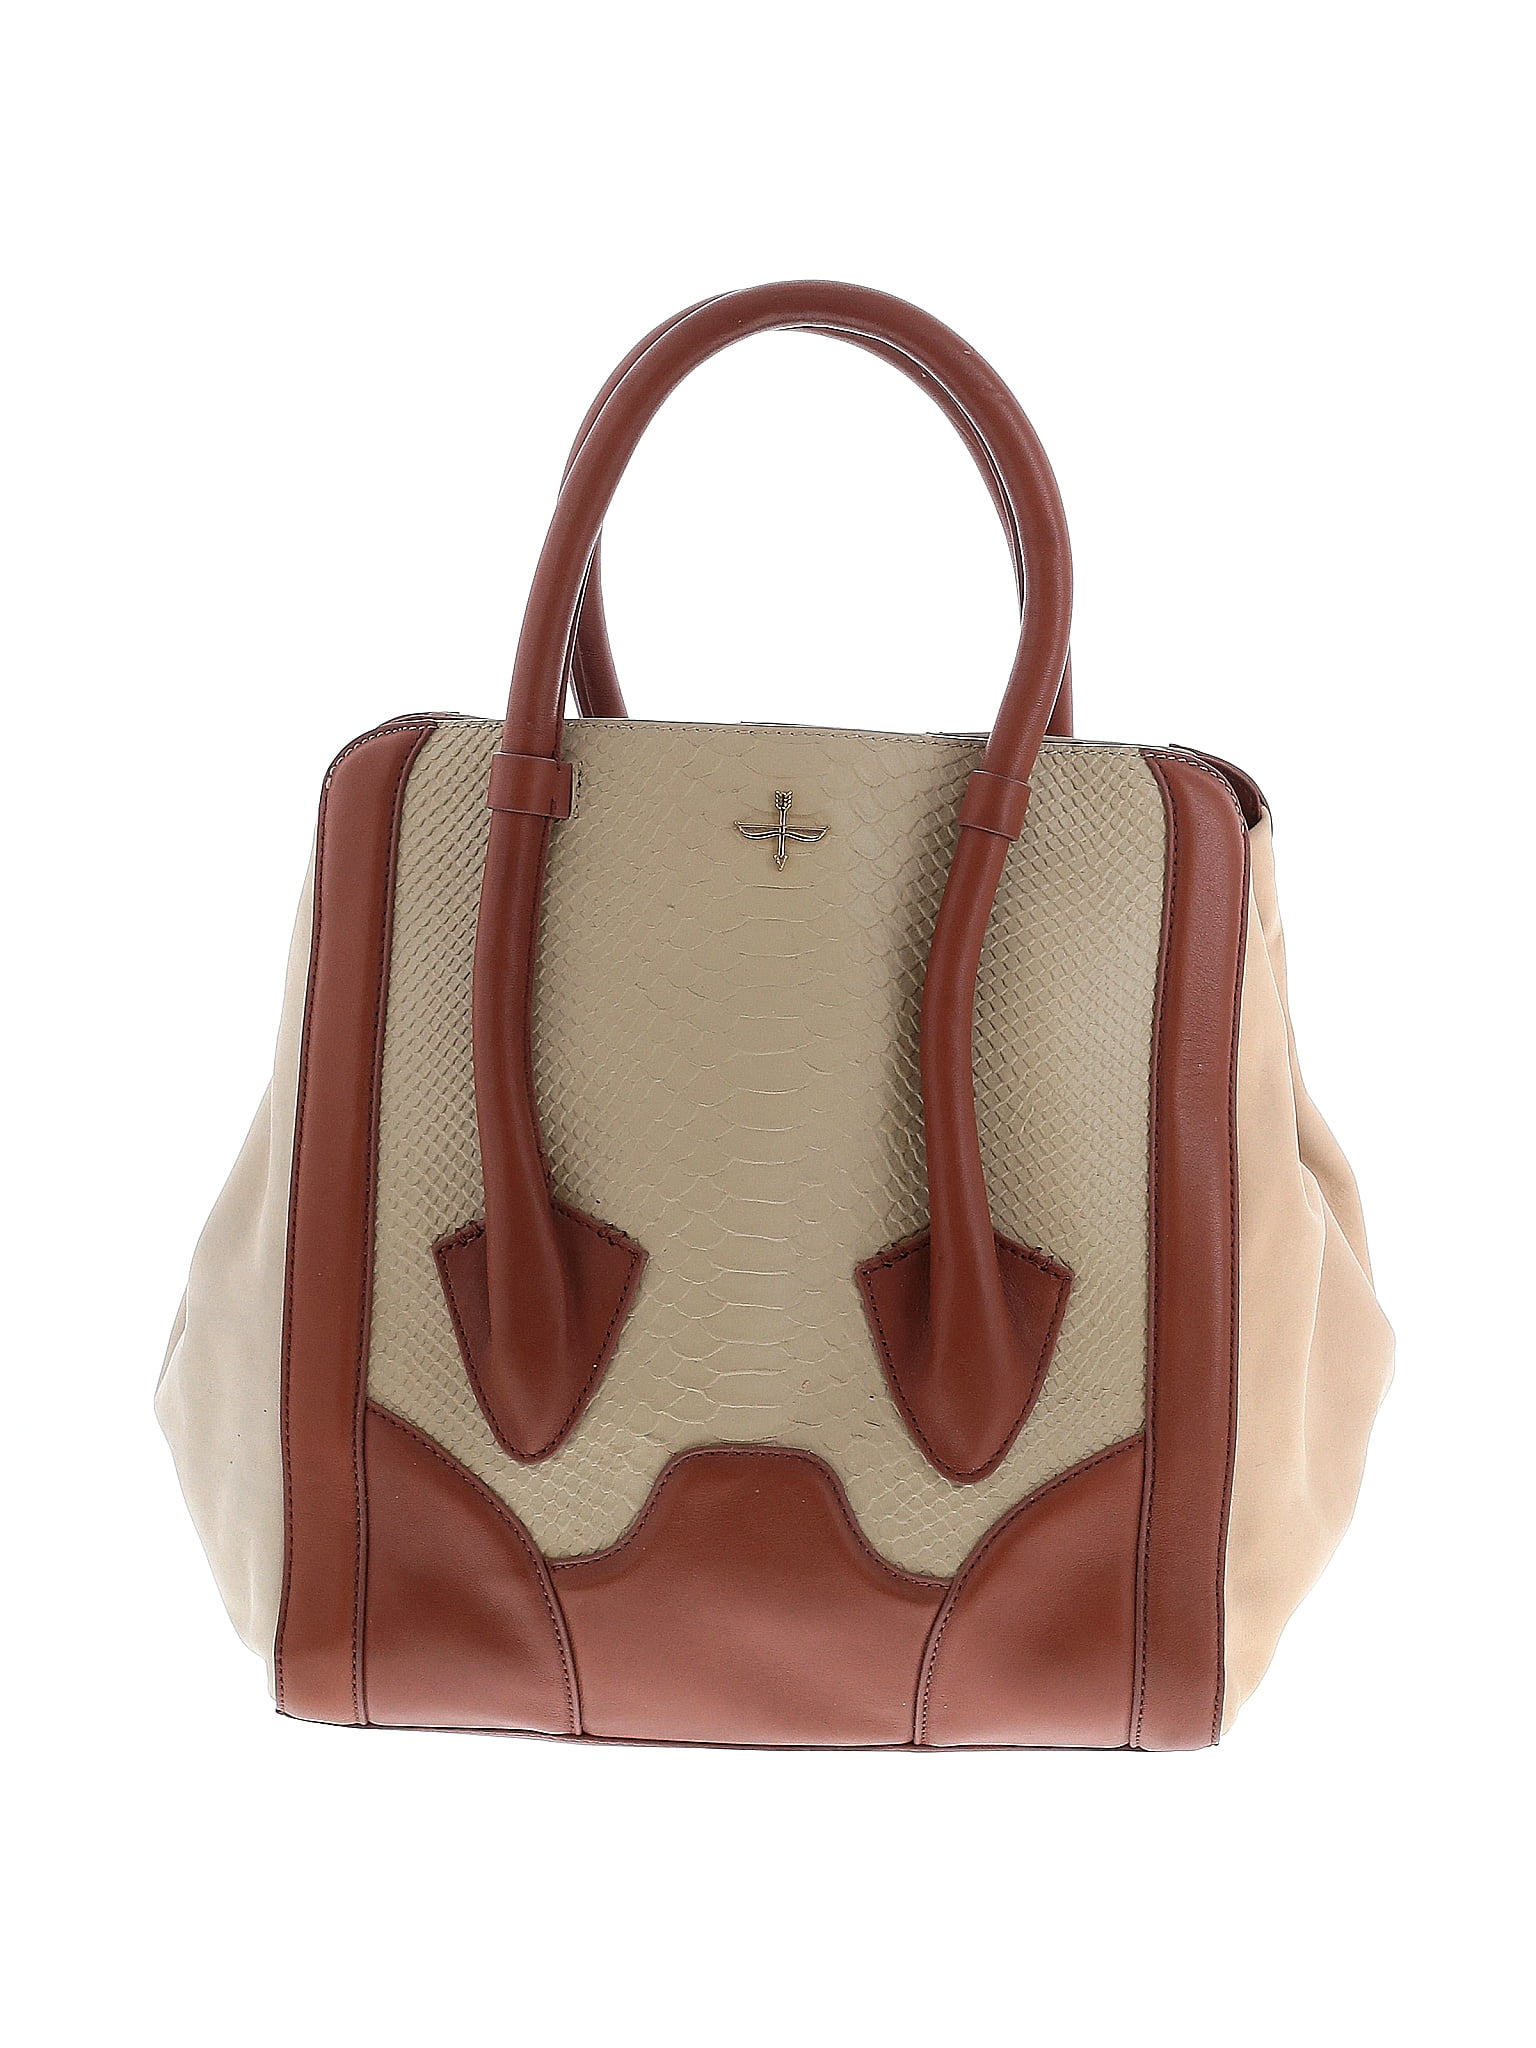 Pour La Victoire Handbags On Sale Up To 90% Off Retail